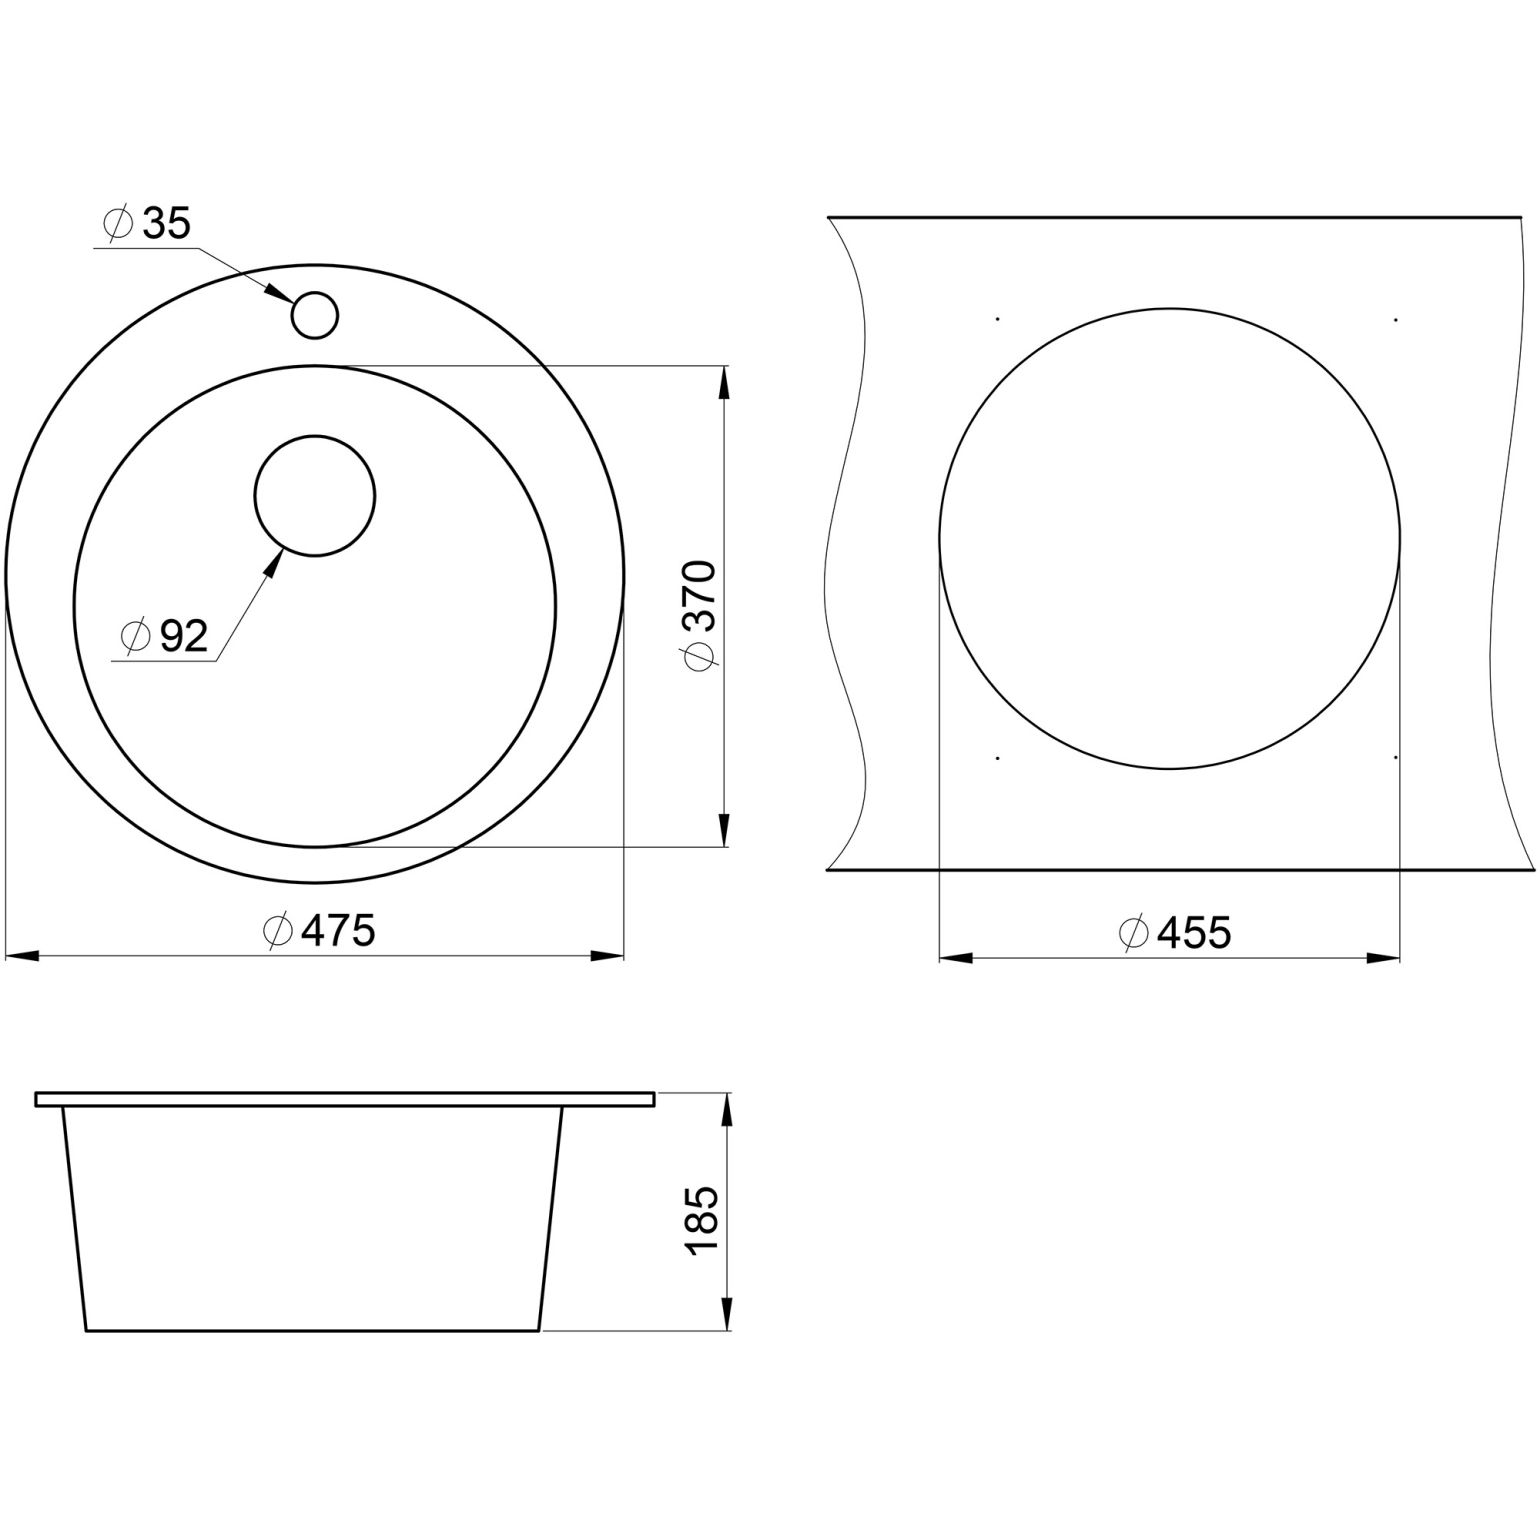 Кухонная мойка кварцевая Granula GR-4801 односекционная круглая, врезная, чаша D 370, цвет шварц (4801sv)